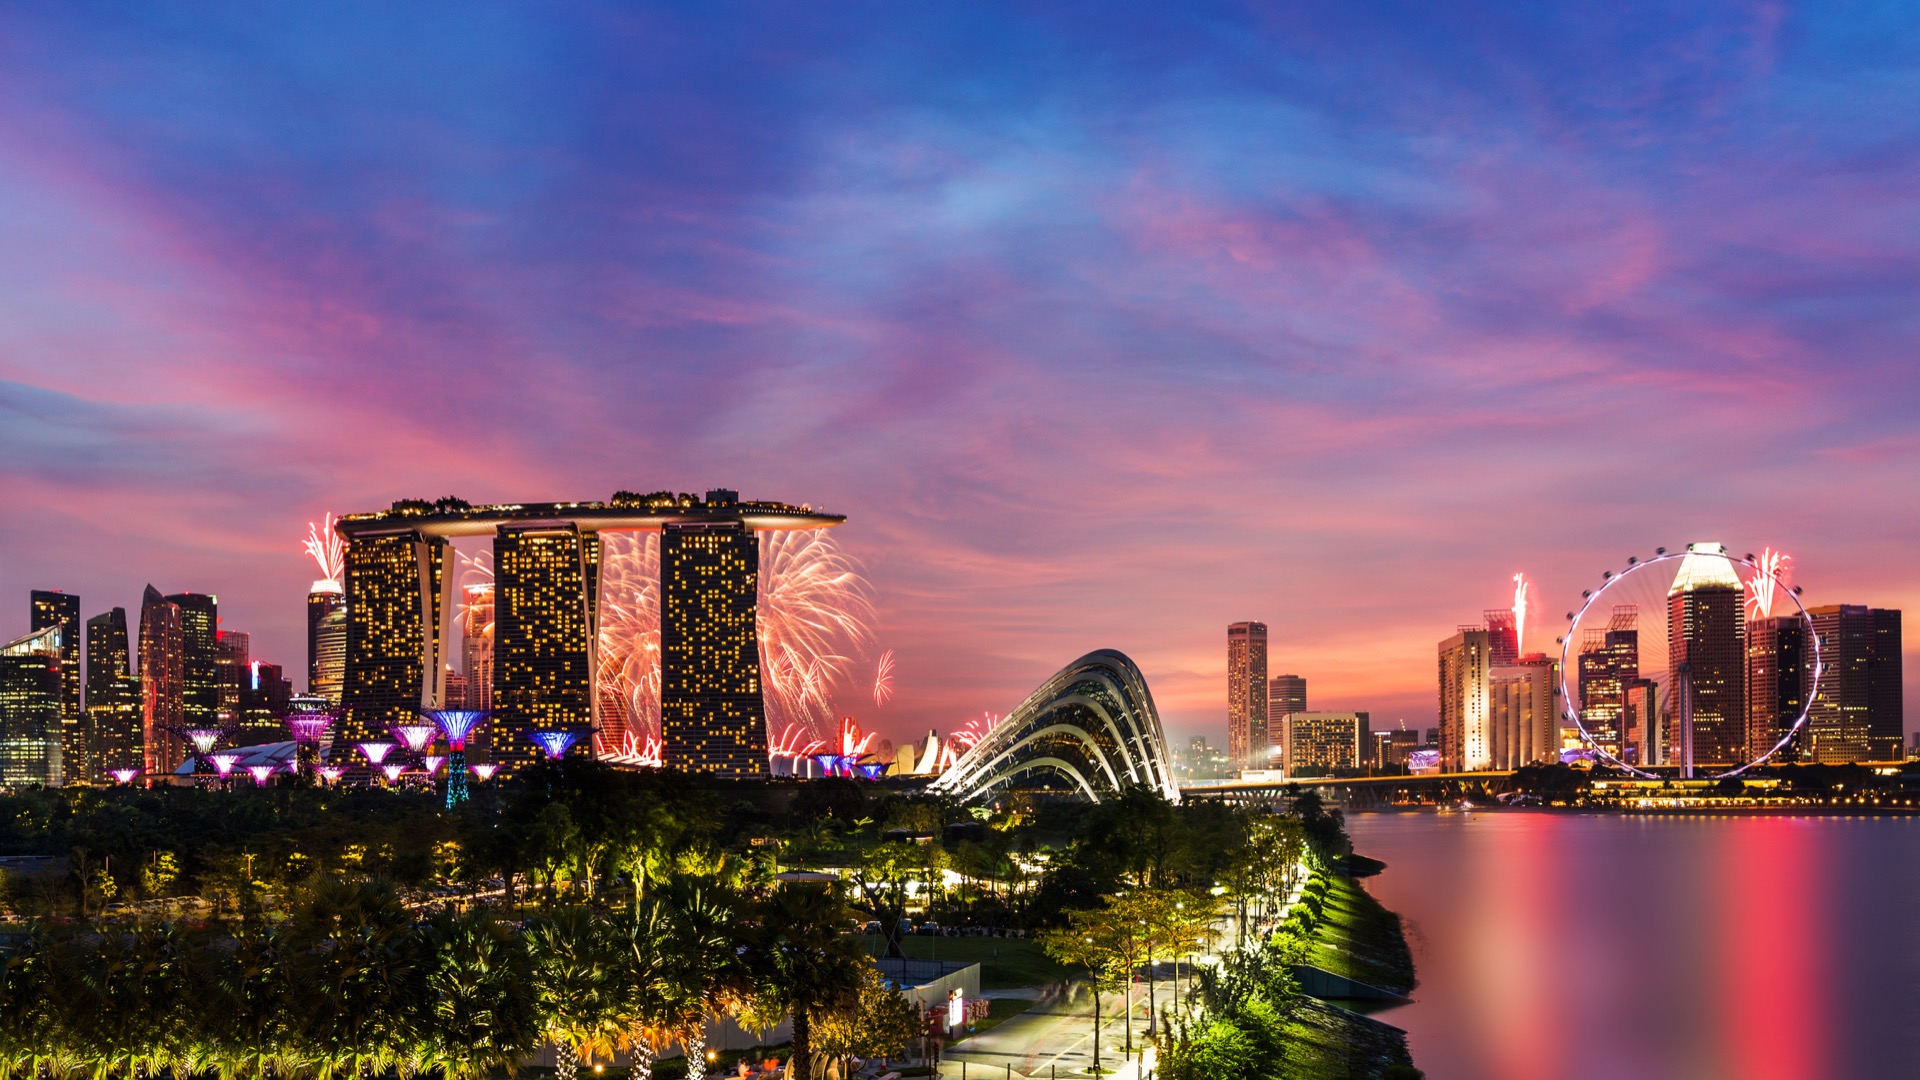 シンガポールのホテル 避けるべき危険地区の解説 お勧めホテル紹介 Howtravel